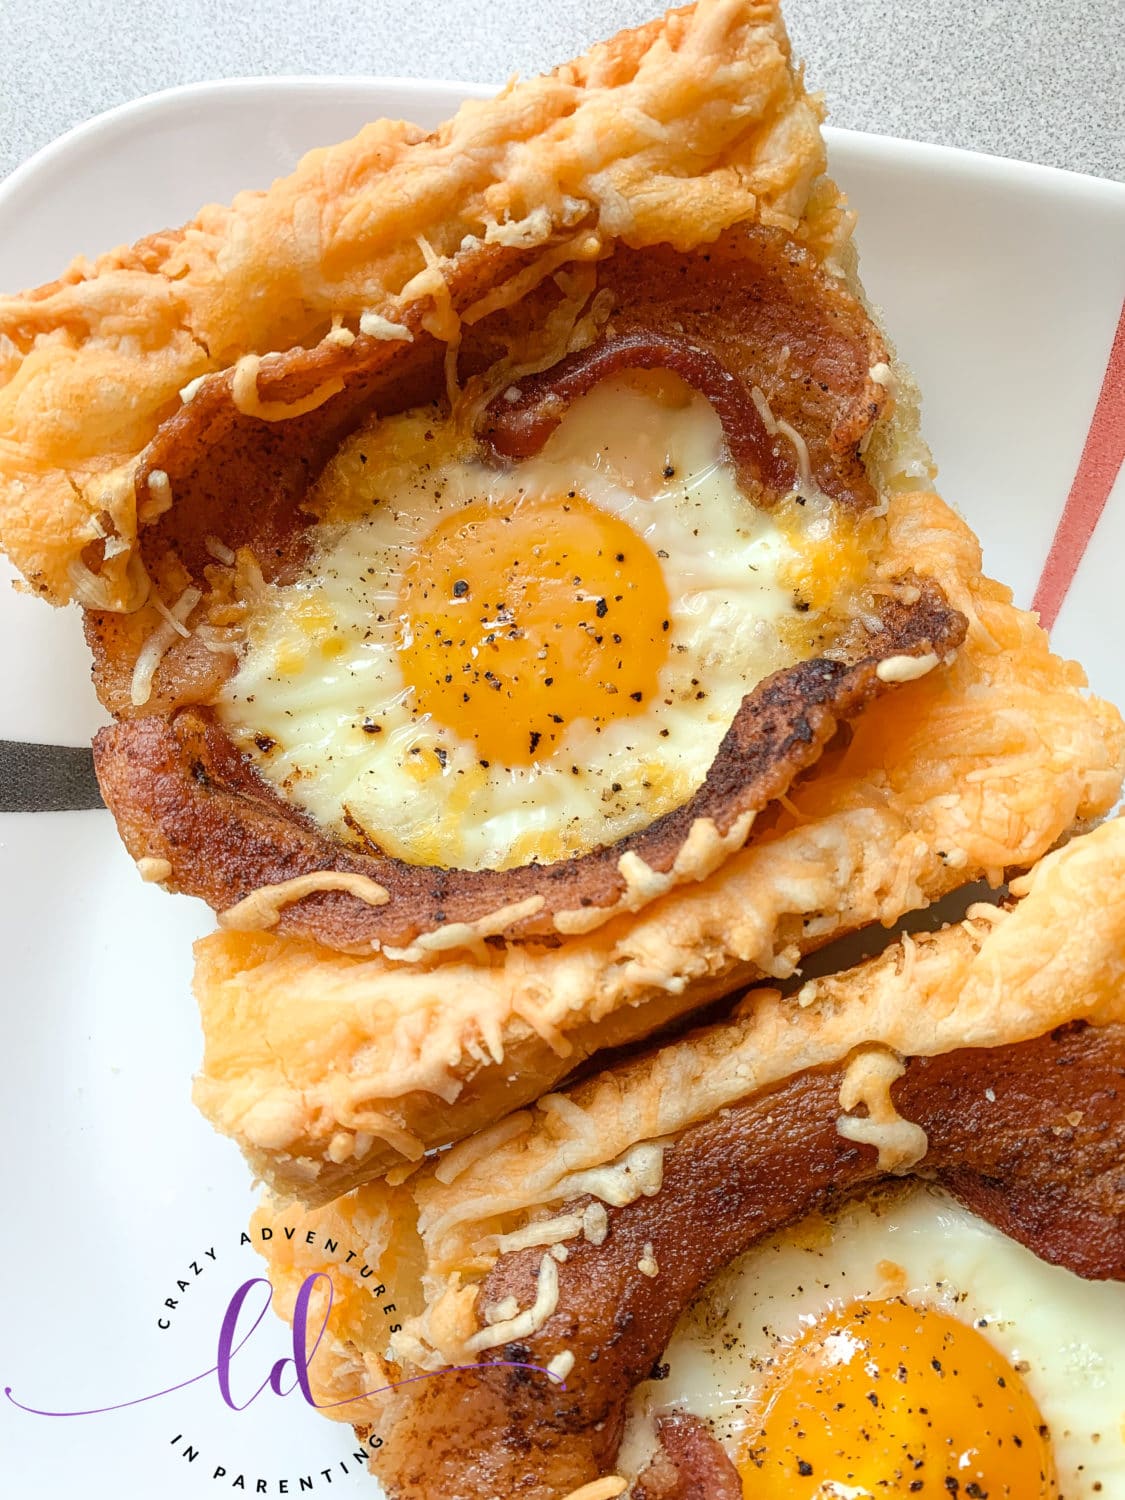 Bacon Cheesy Baked Egg Italian Toast - Easy Brunch Recipe